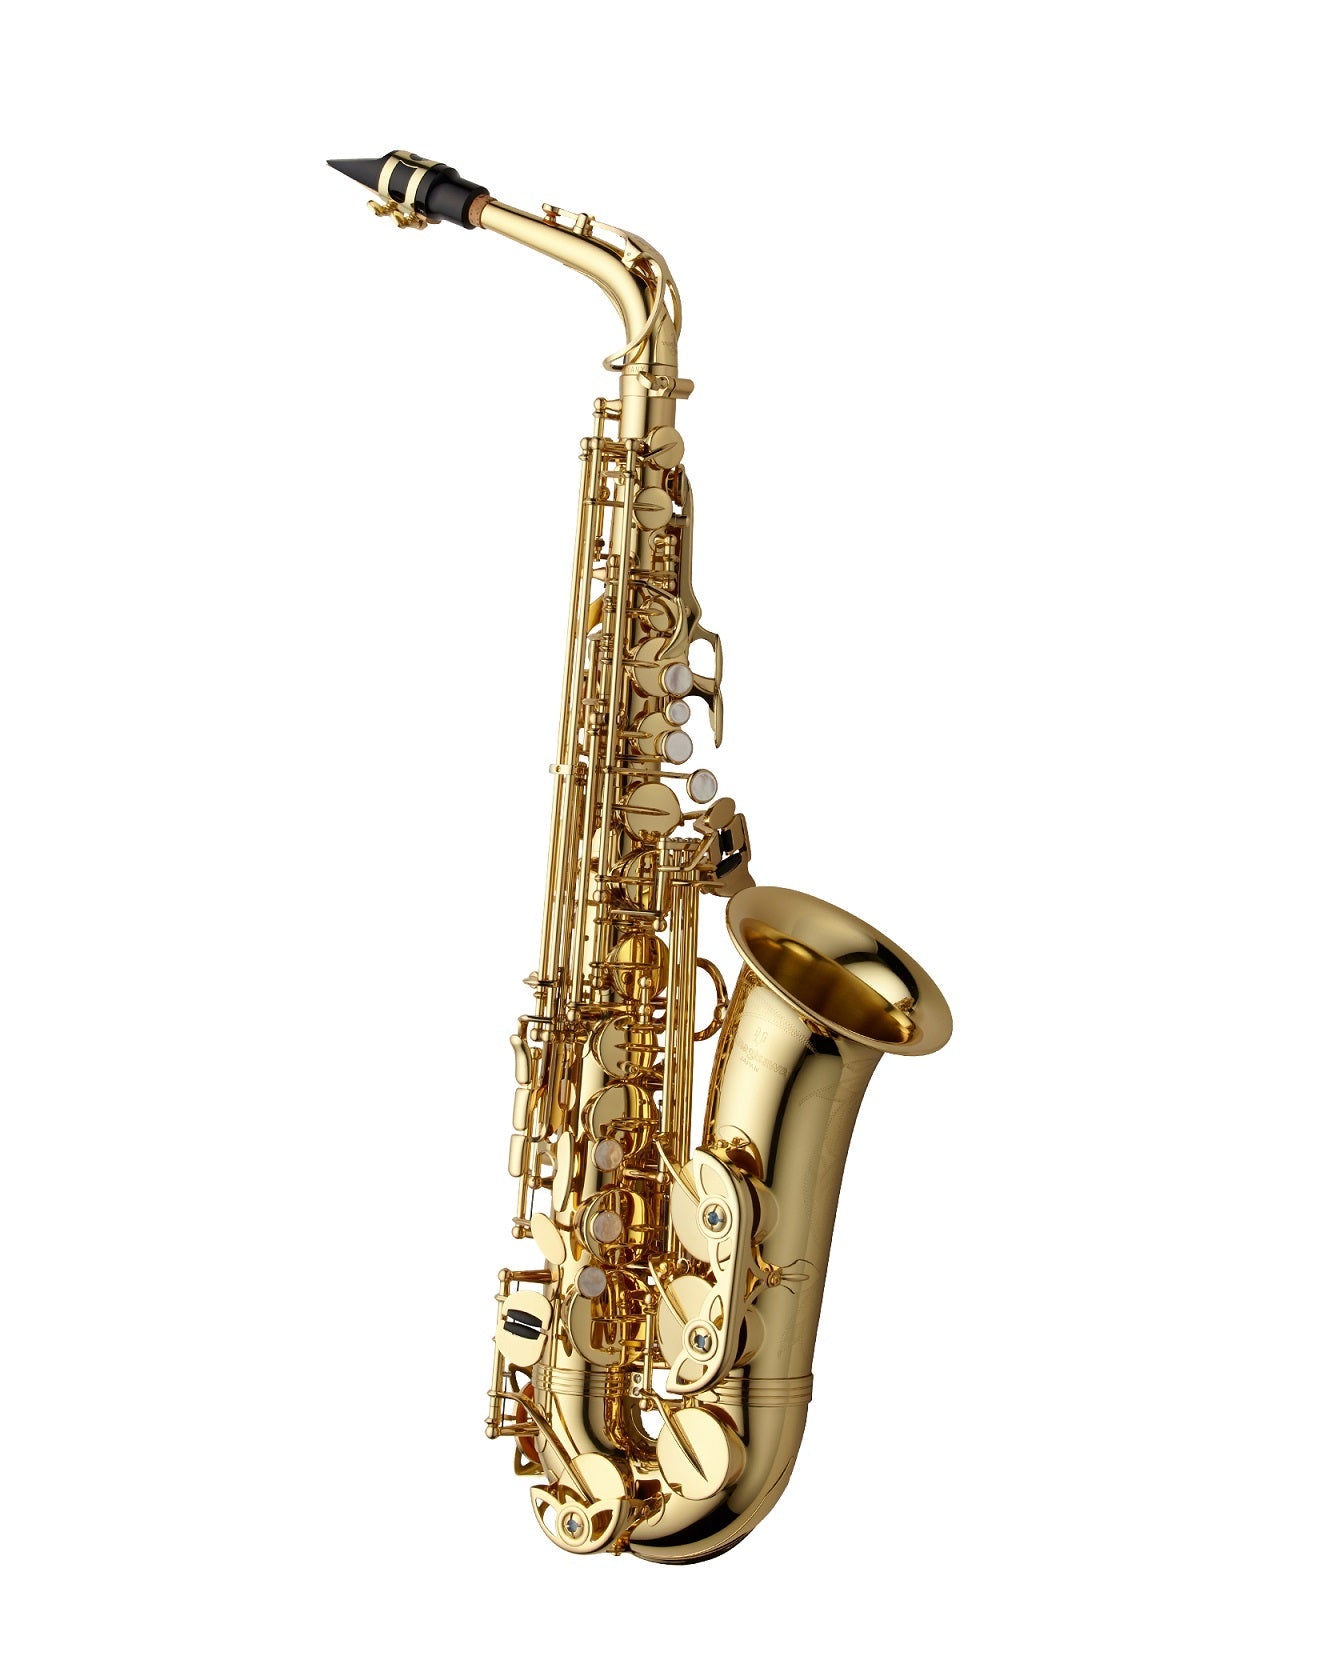 Yanagisawa WO Series Professional Alto Saxophones - Premium Alto Saxophone from Yanagisawa - Just $3969! Shop now at Poppa's Music